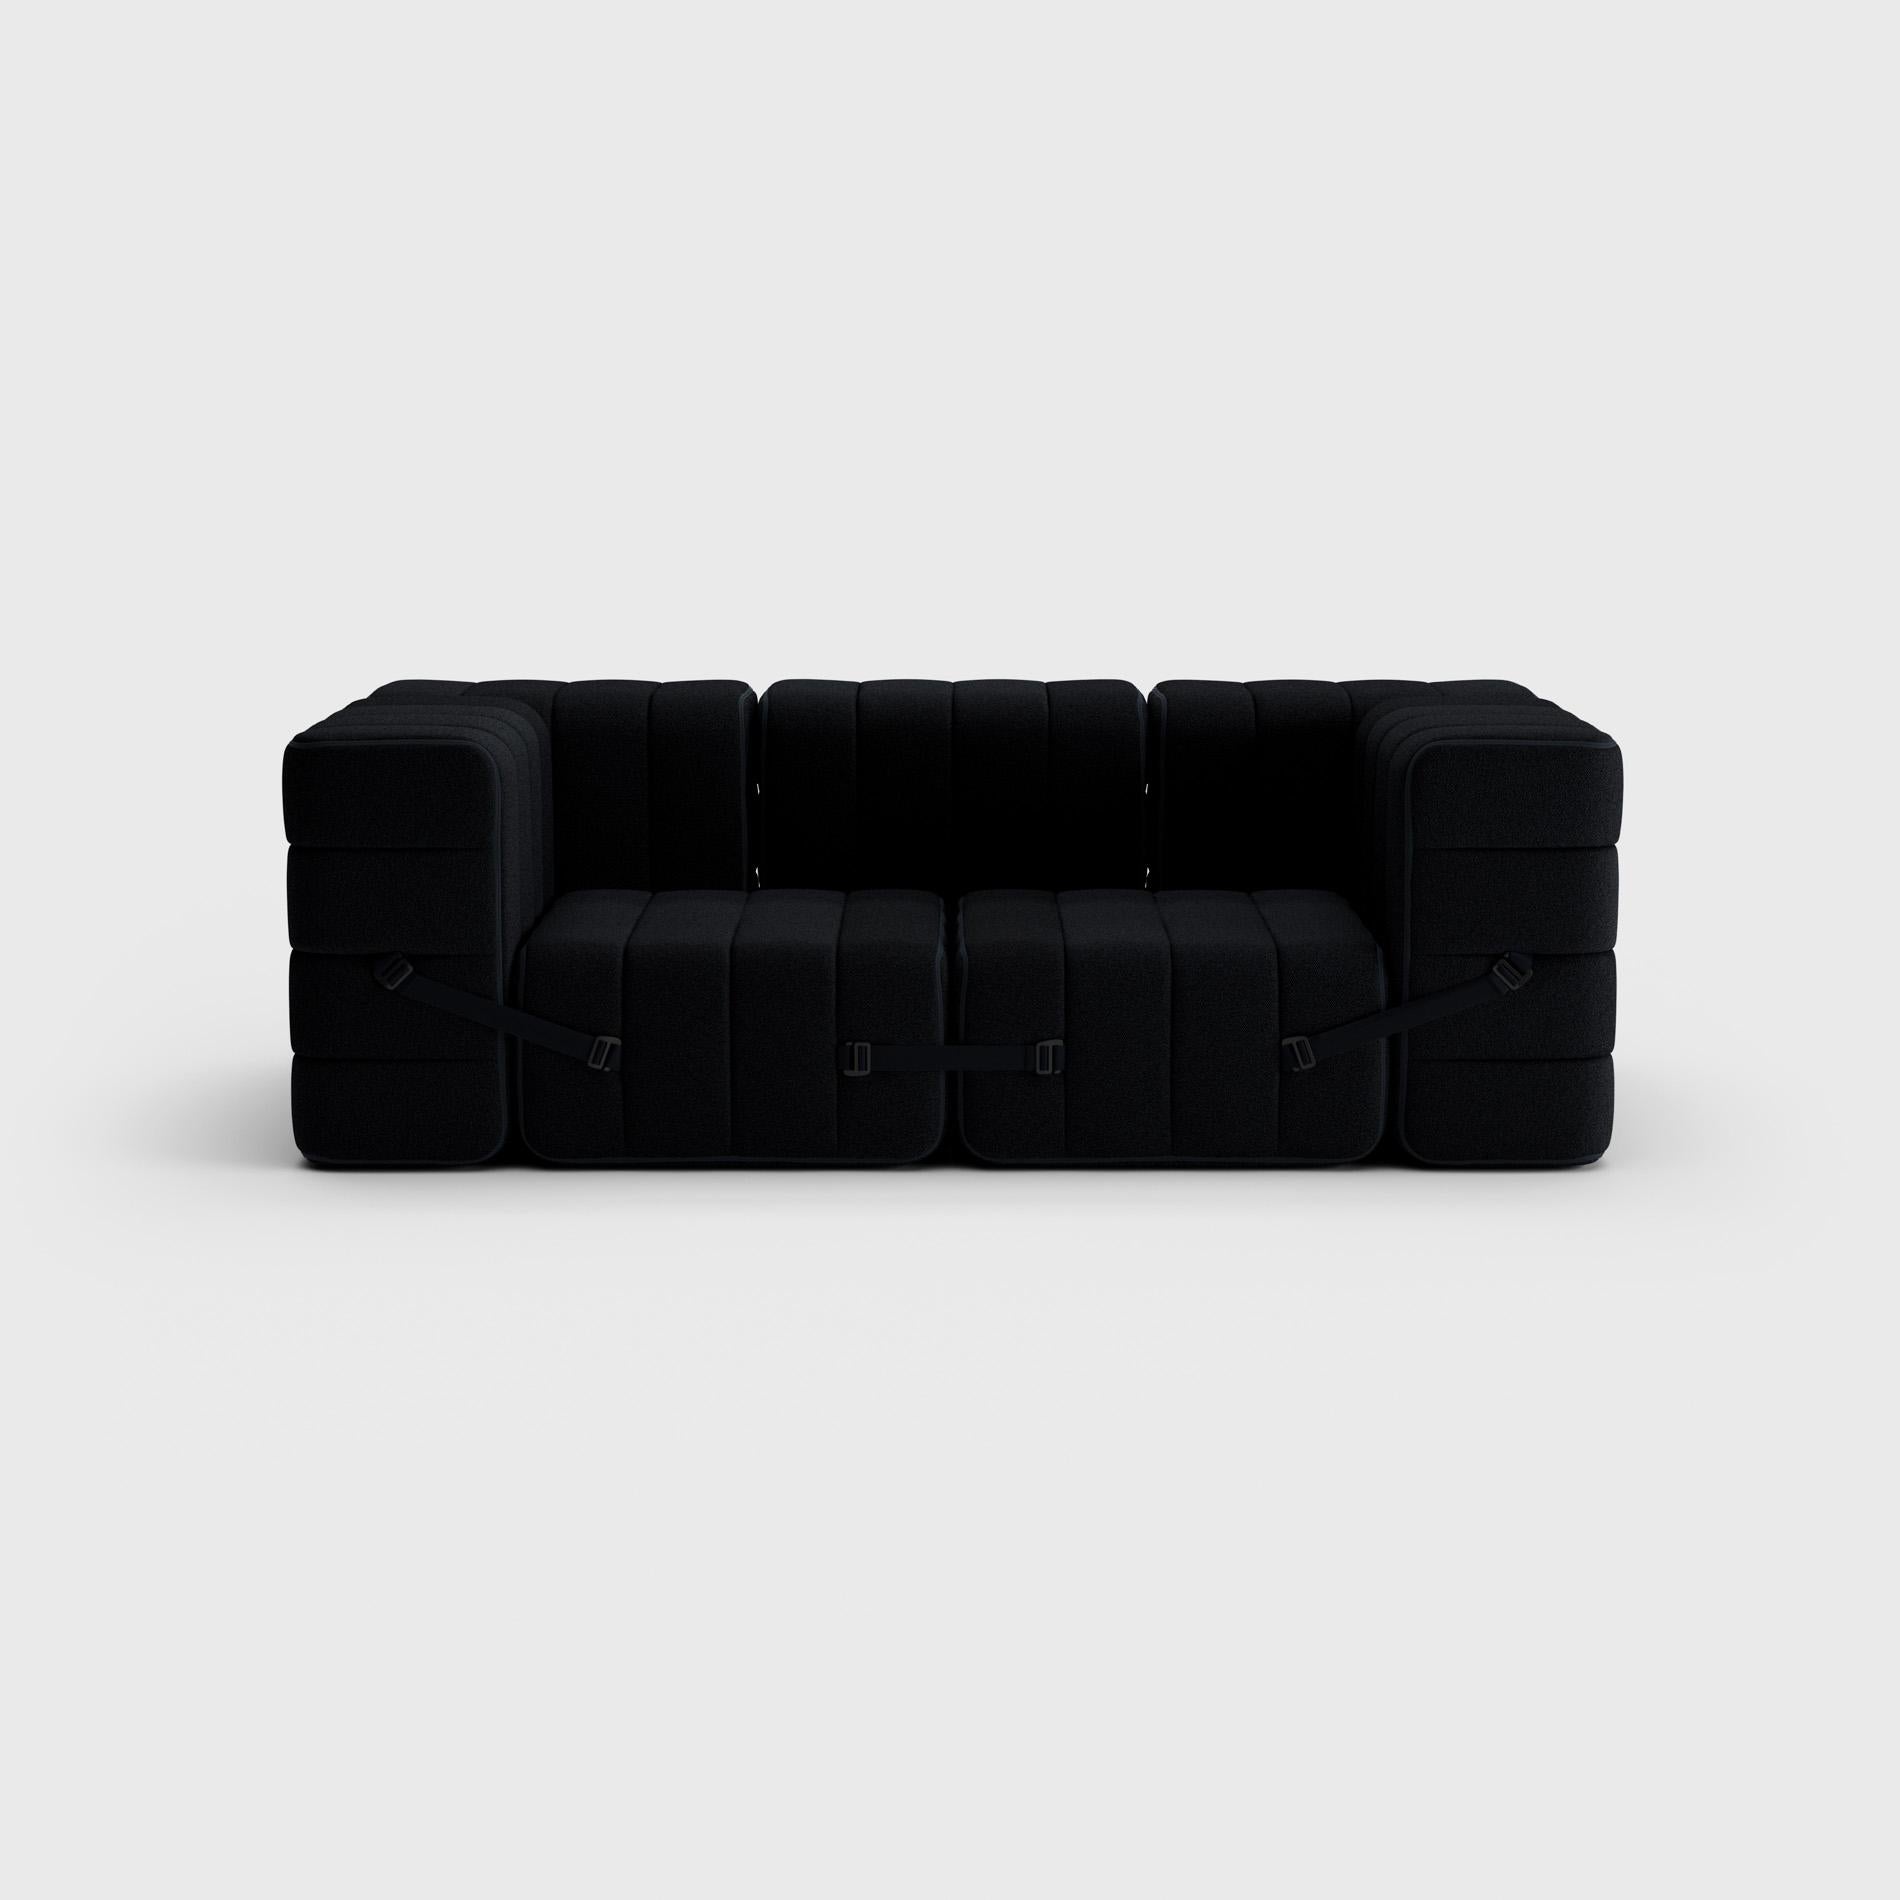 Hand-Crafted Curt Single Module, Fabric Sera 'Ebony Black', Curt Modular Sofa System For Sale